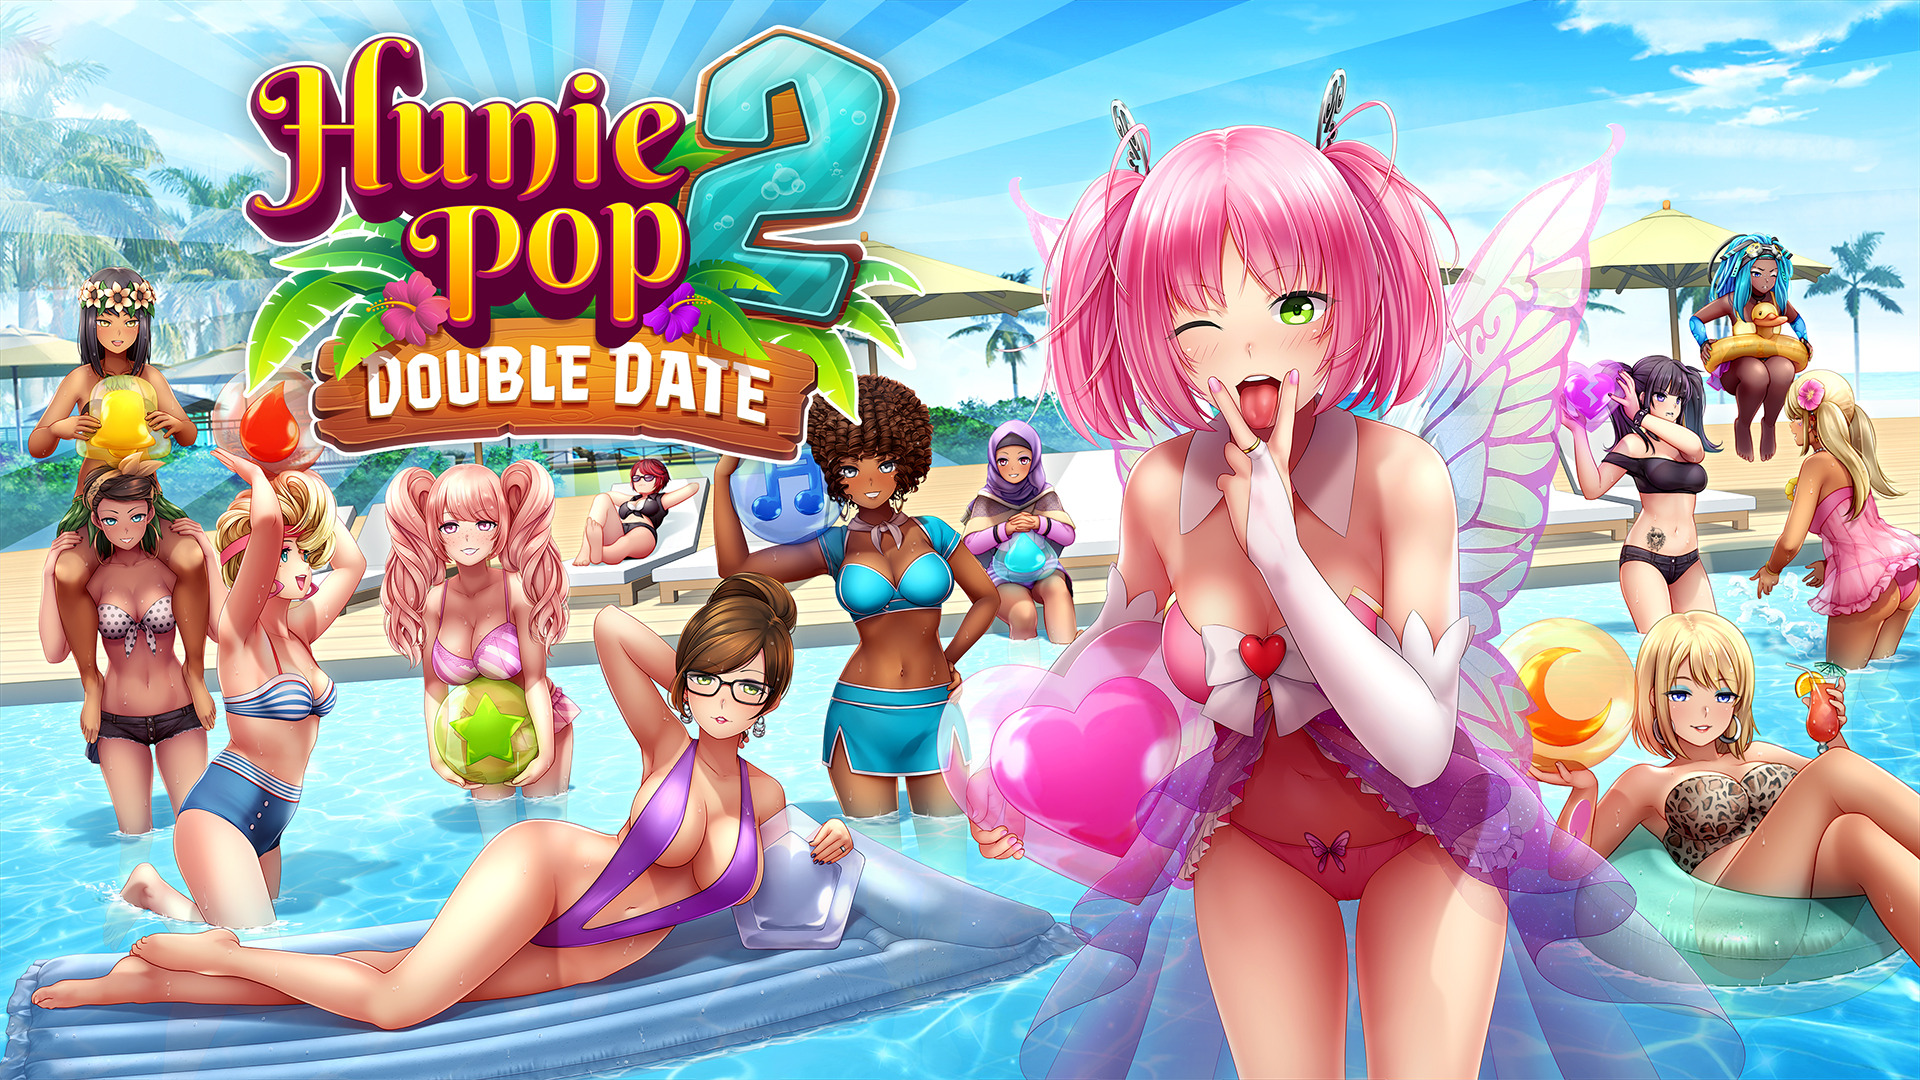 Huniepop 2: double date